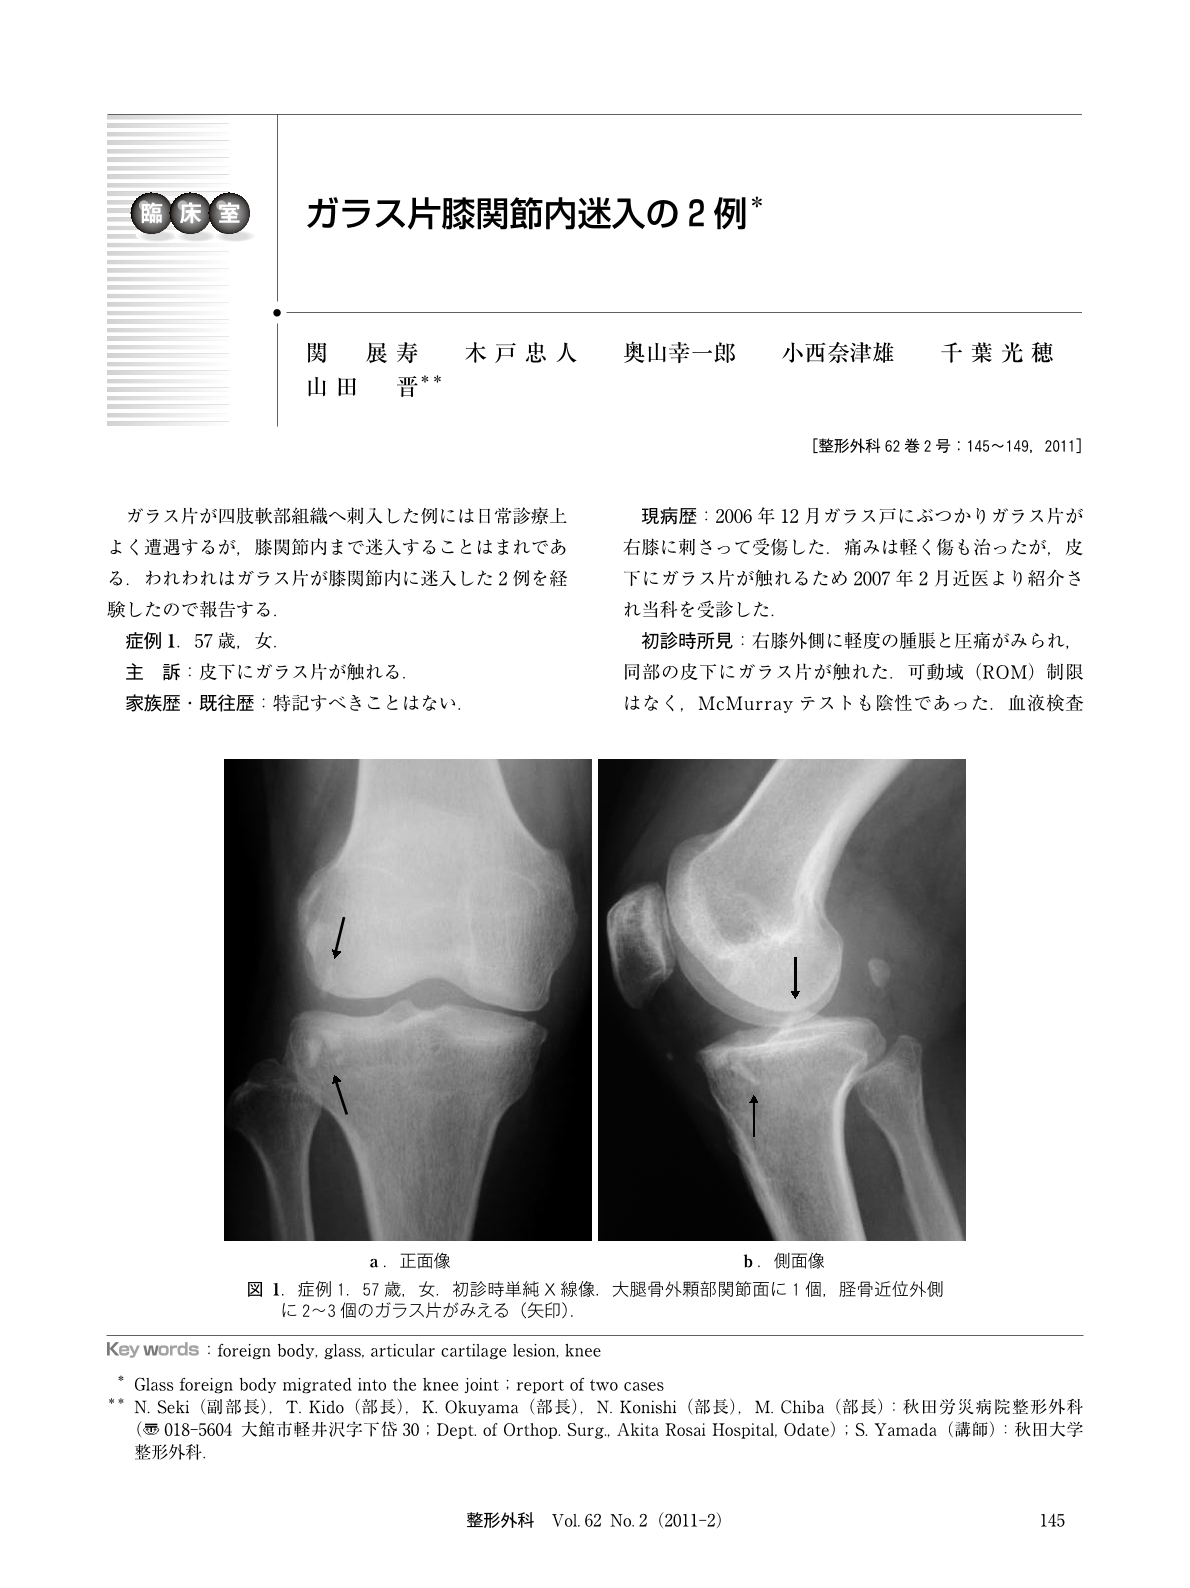 ガラス片膝関節内迷入の2例 臨床雑誌整形外科 62巻2号 医書 Jp